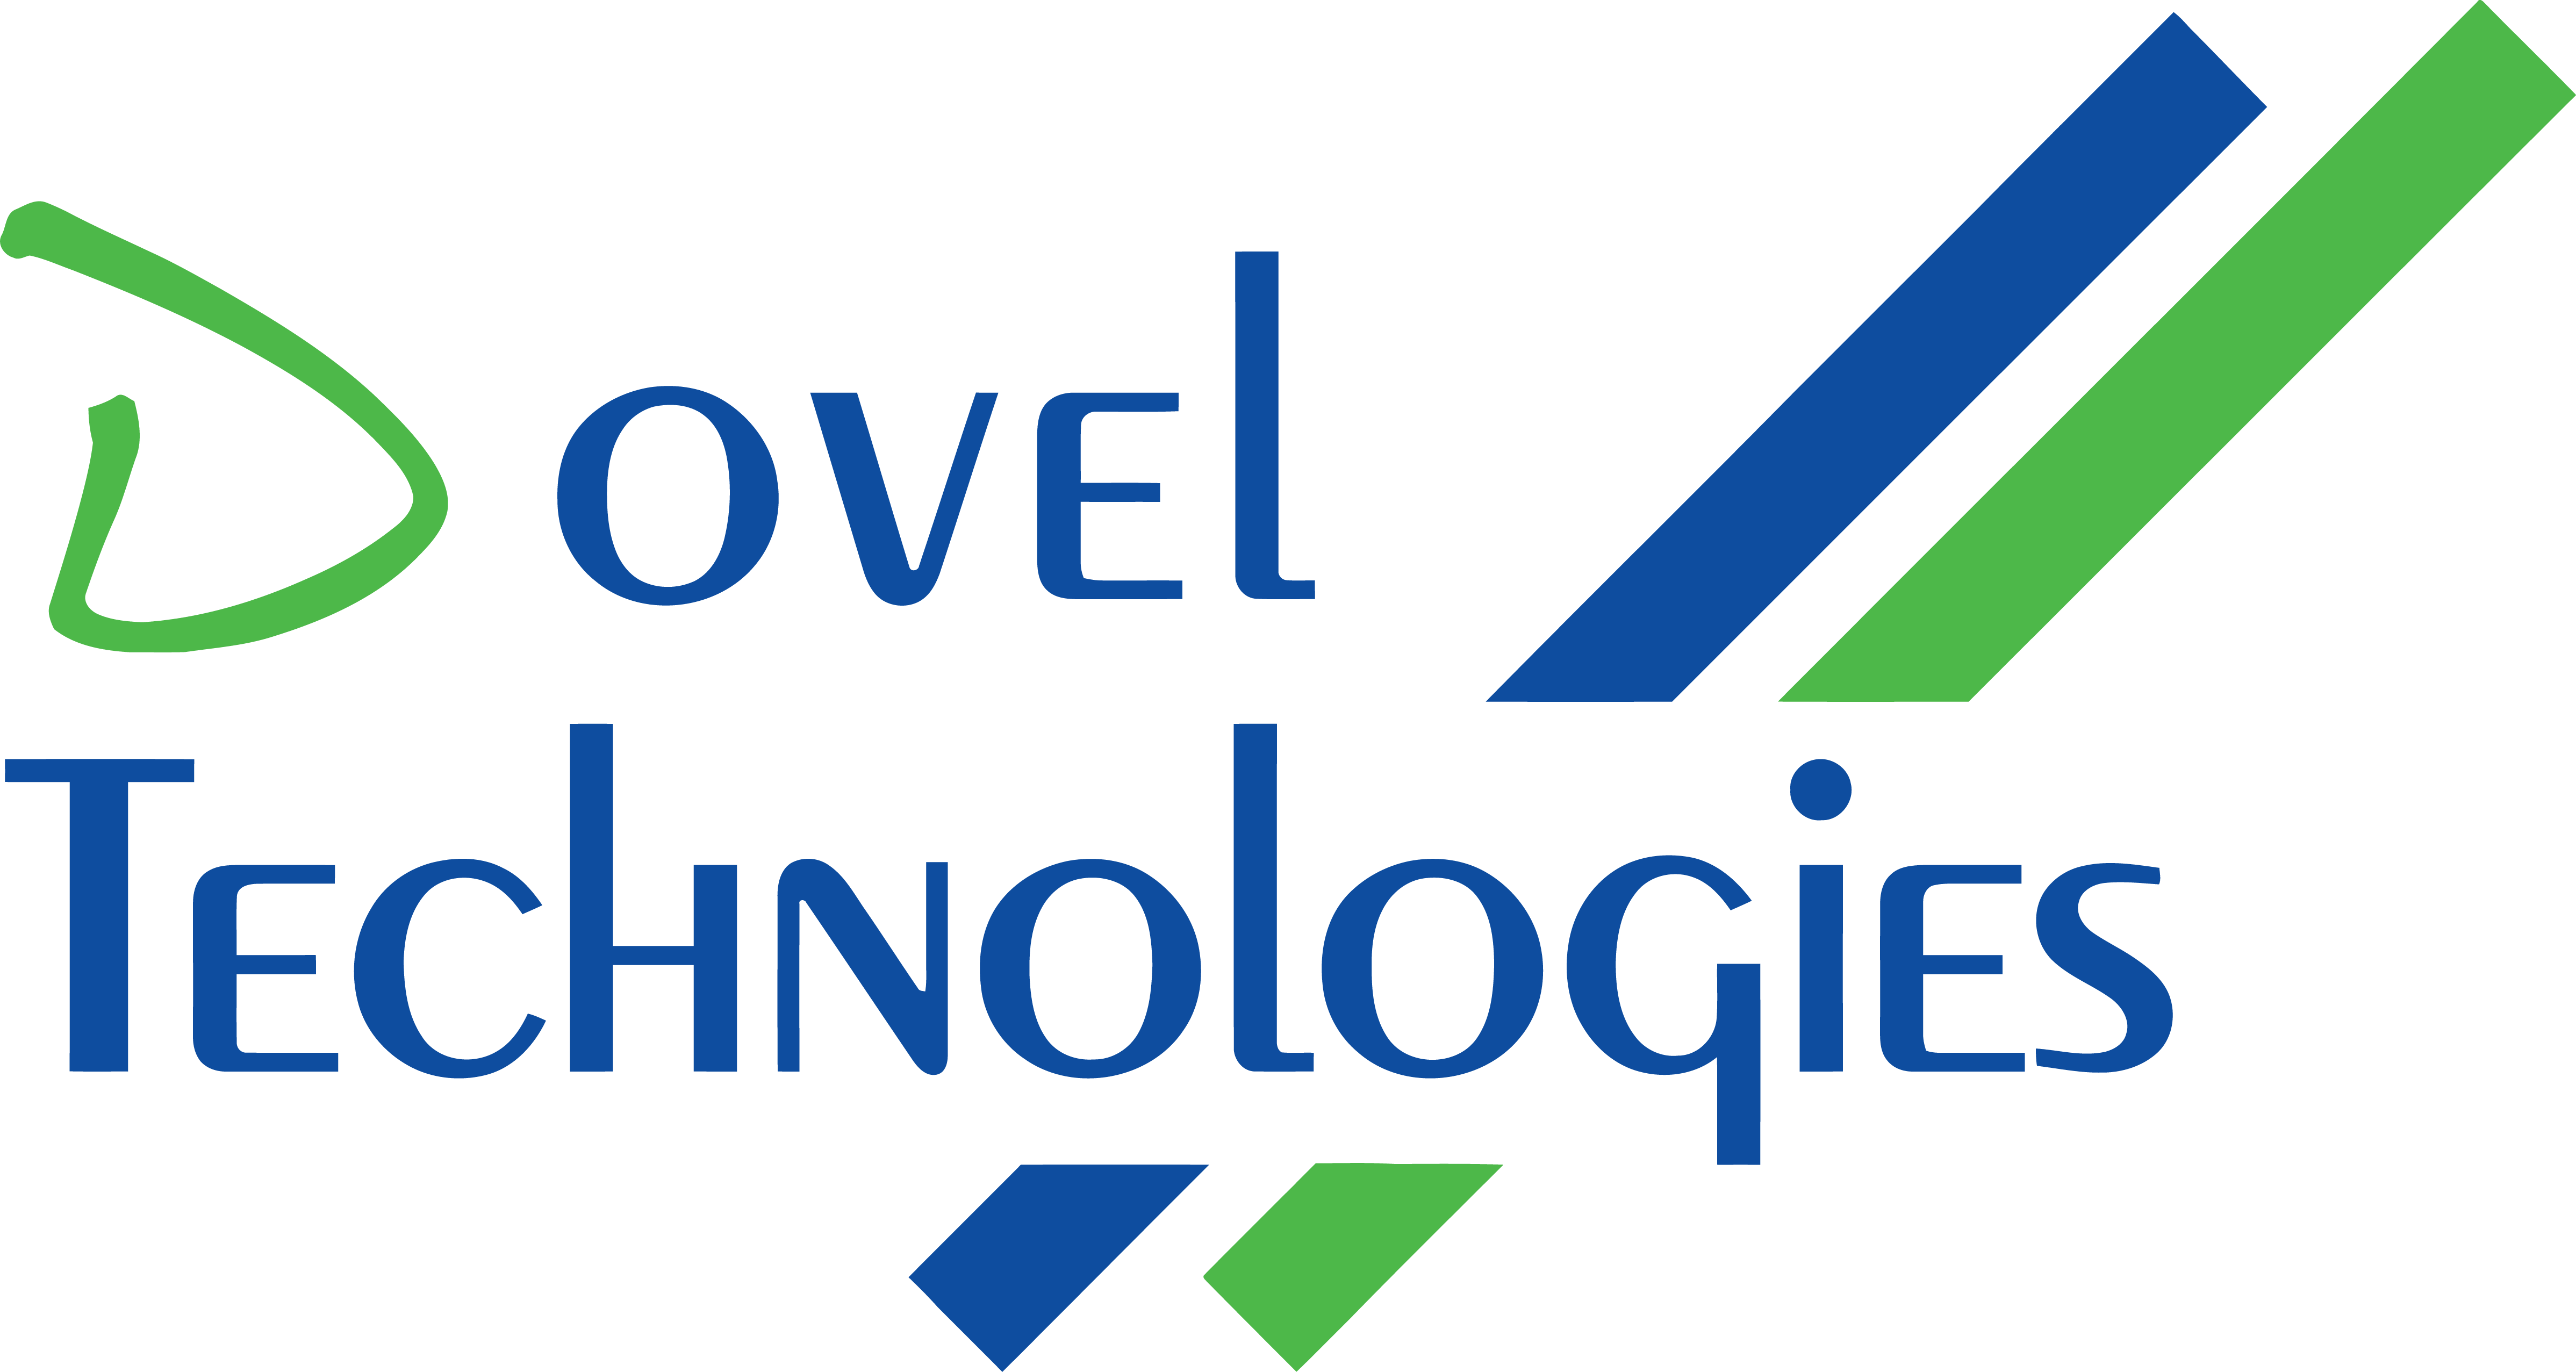 Dovel Technologies logo